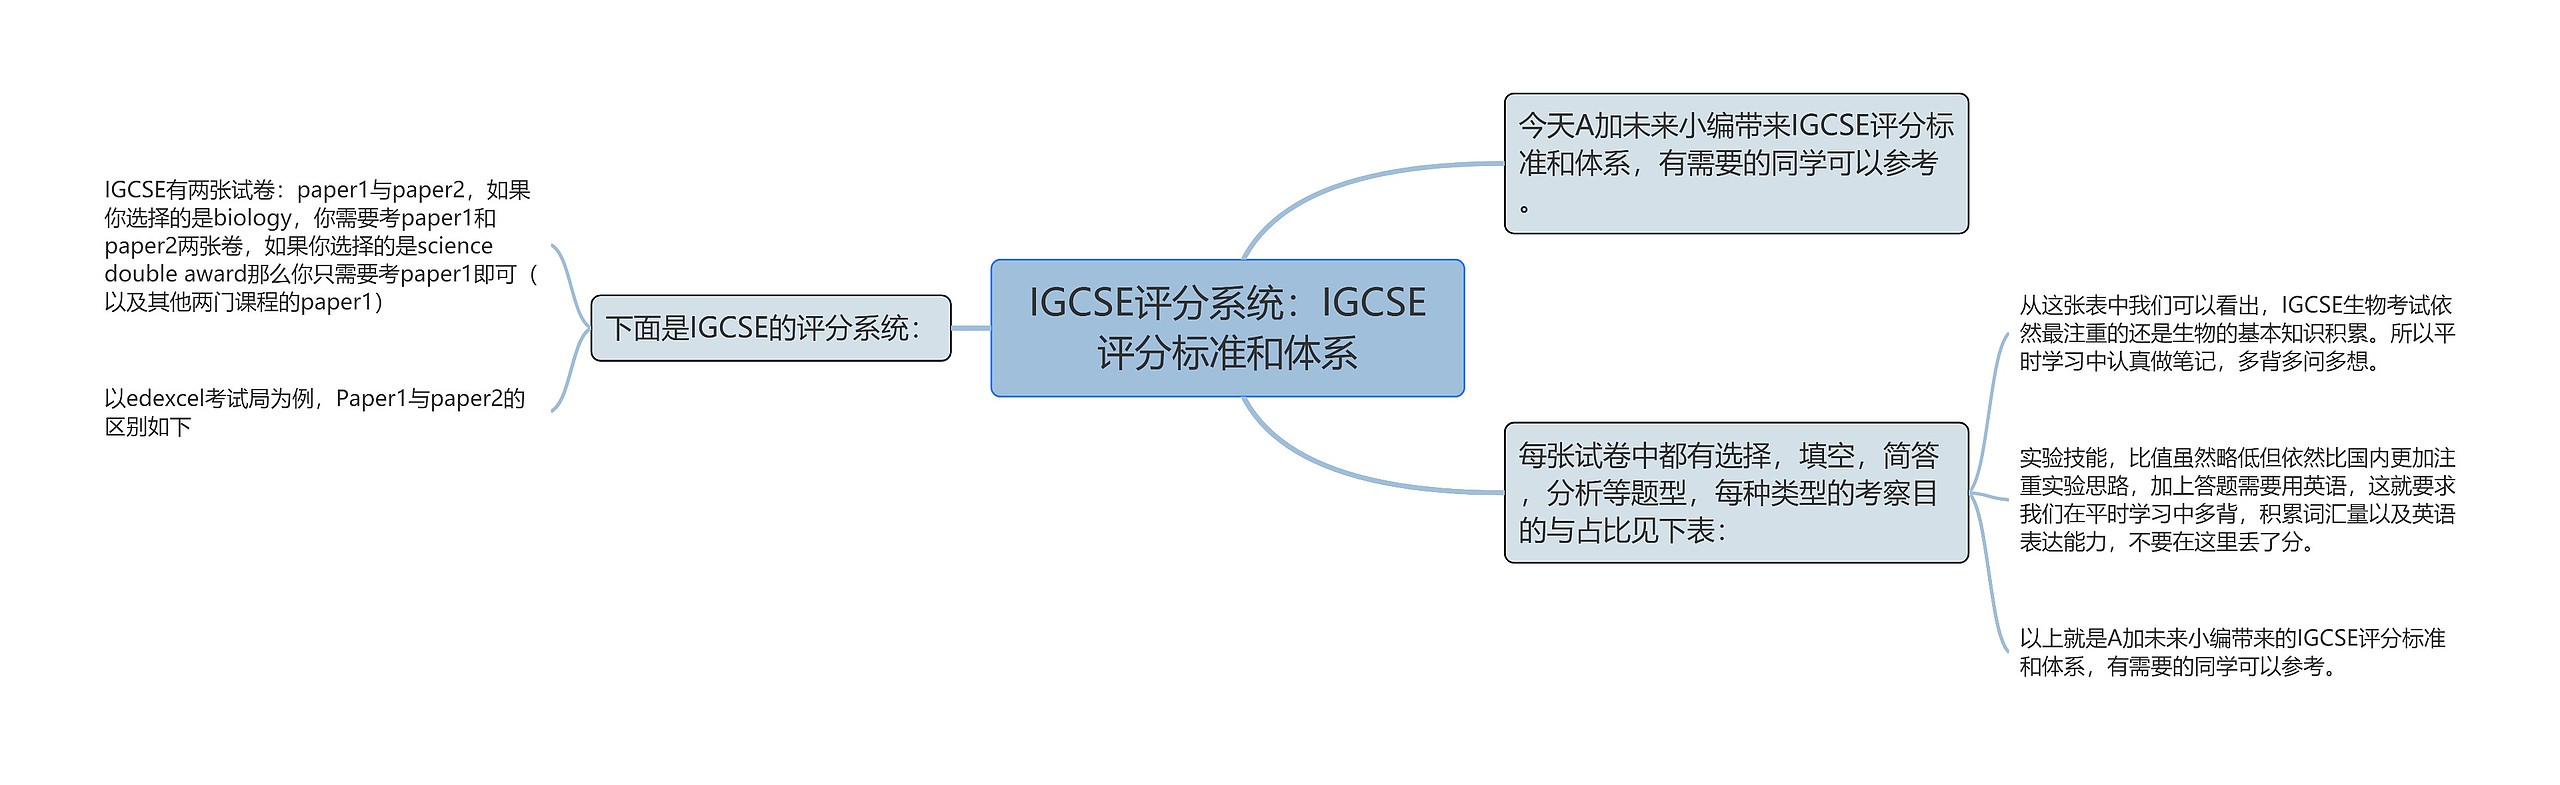 IGCSE评分系统：IGCSE评分标准和体系思维导图